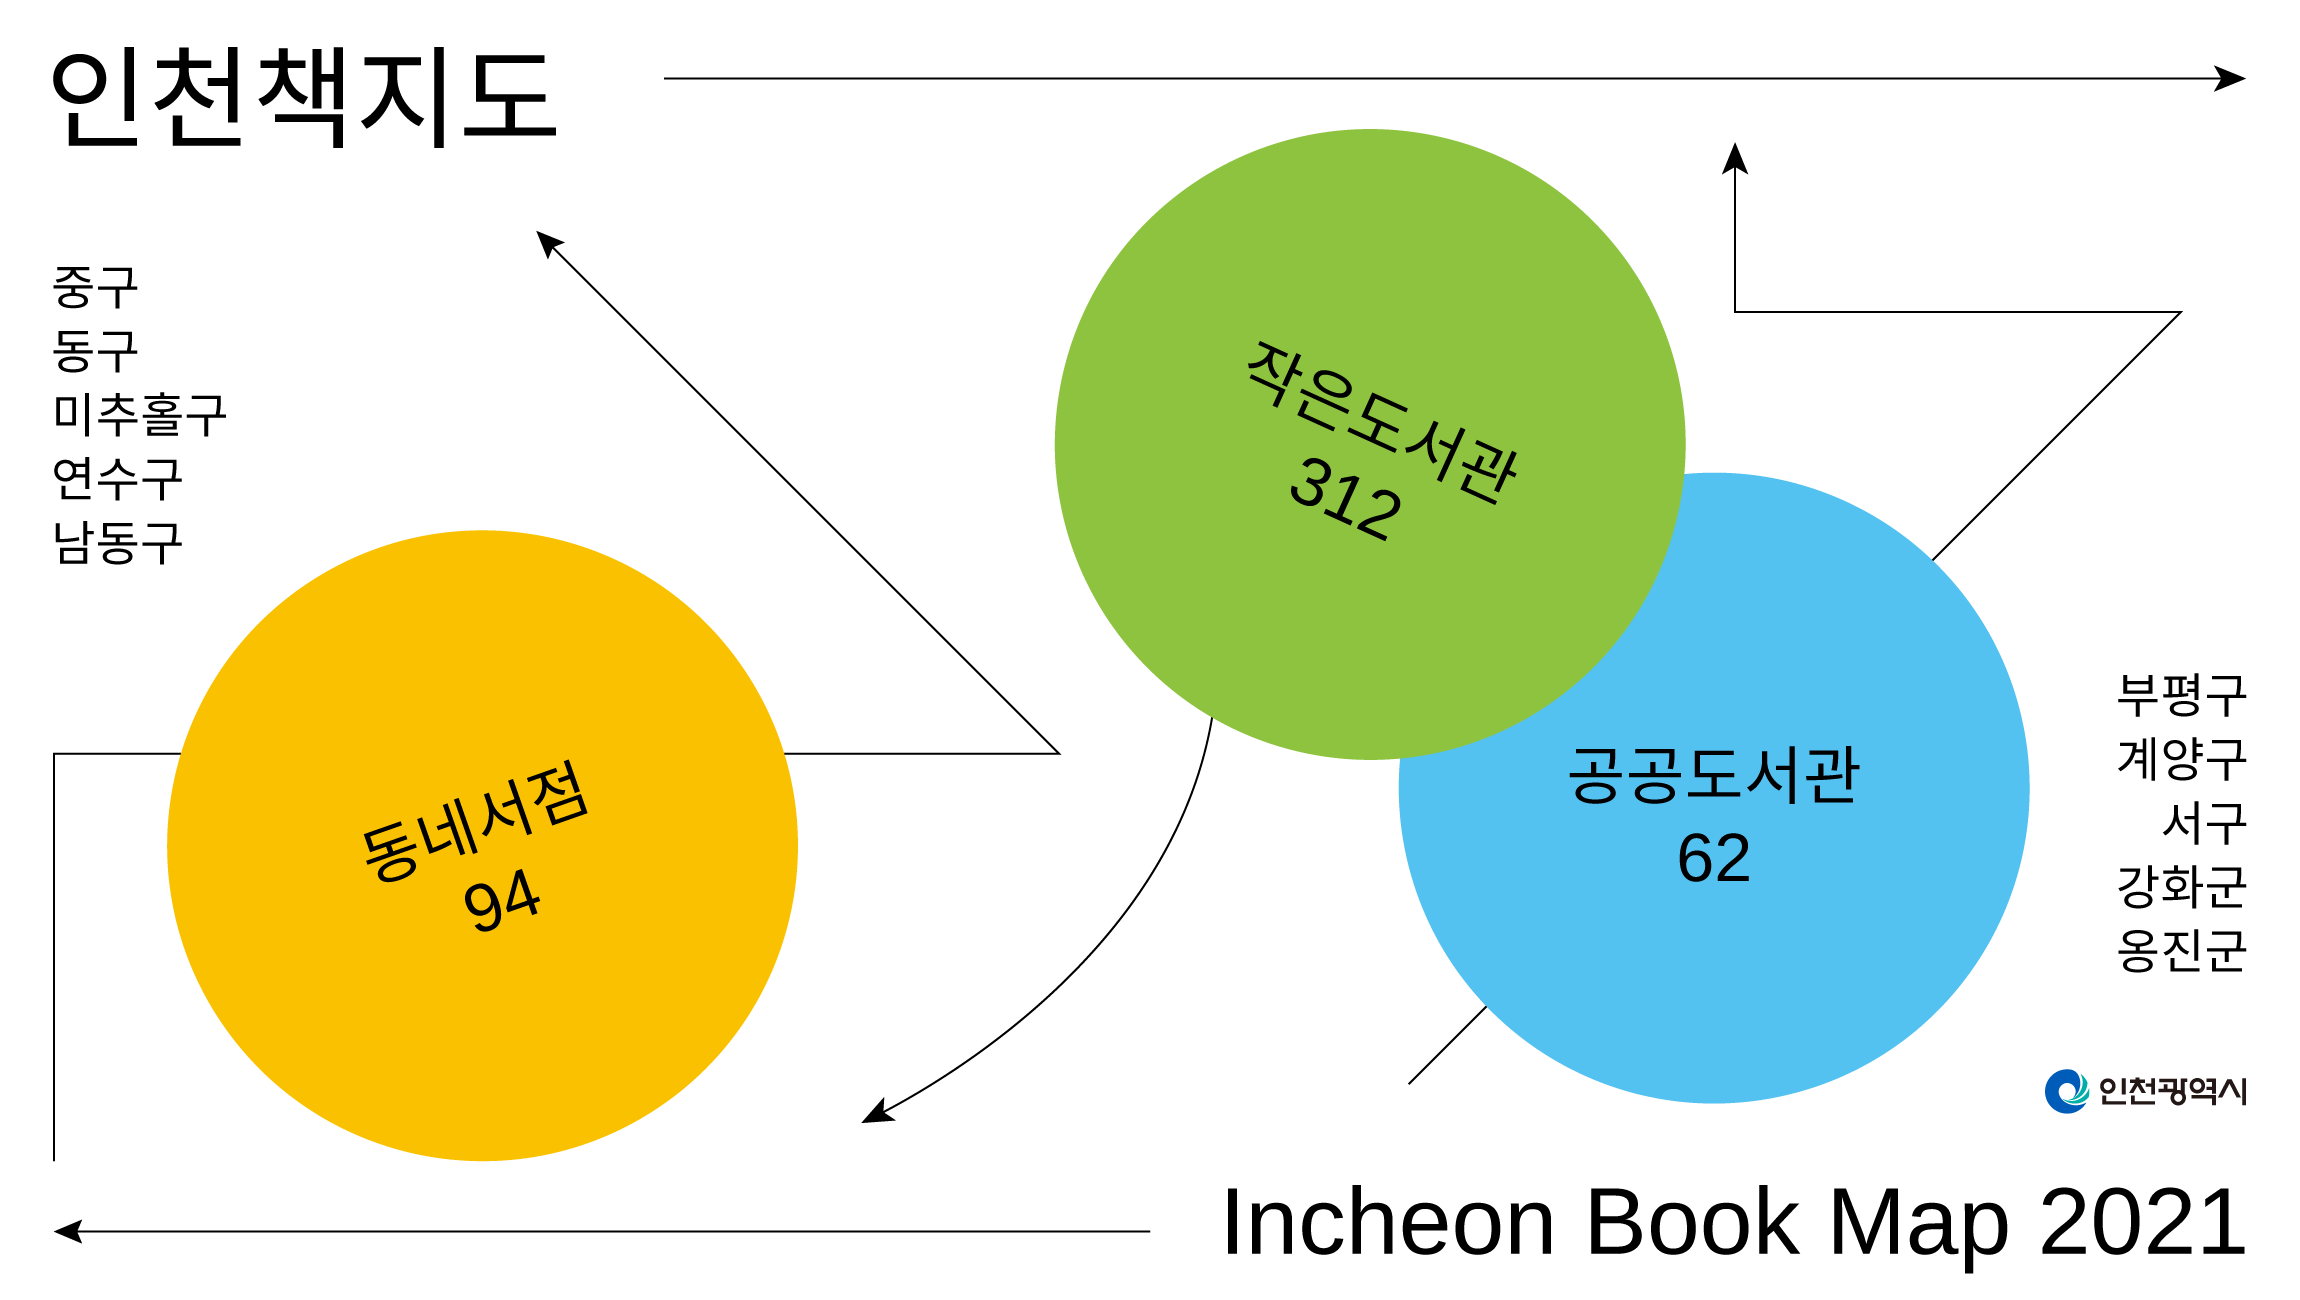 문화의 씨앗 심고 가꾸는 인천의 동네서점과 도서관들 <2021 인천책지도>